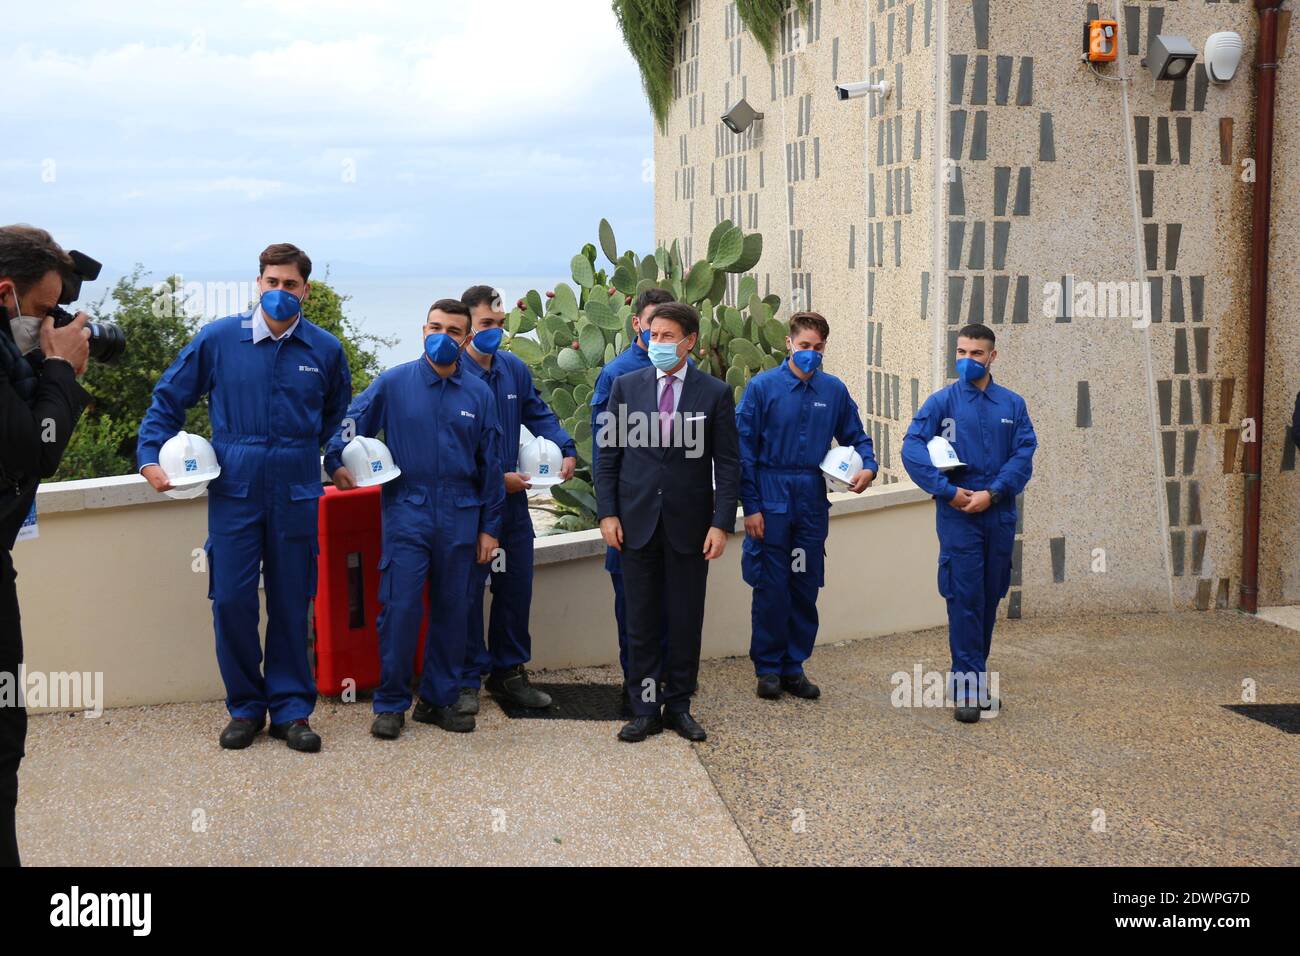 Primo Ministro d'Italia Giuseppe Conte con maschera - Il Premier italiano Giuseppe Conte indossa la mascherina anti Covid Foto Stock